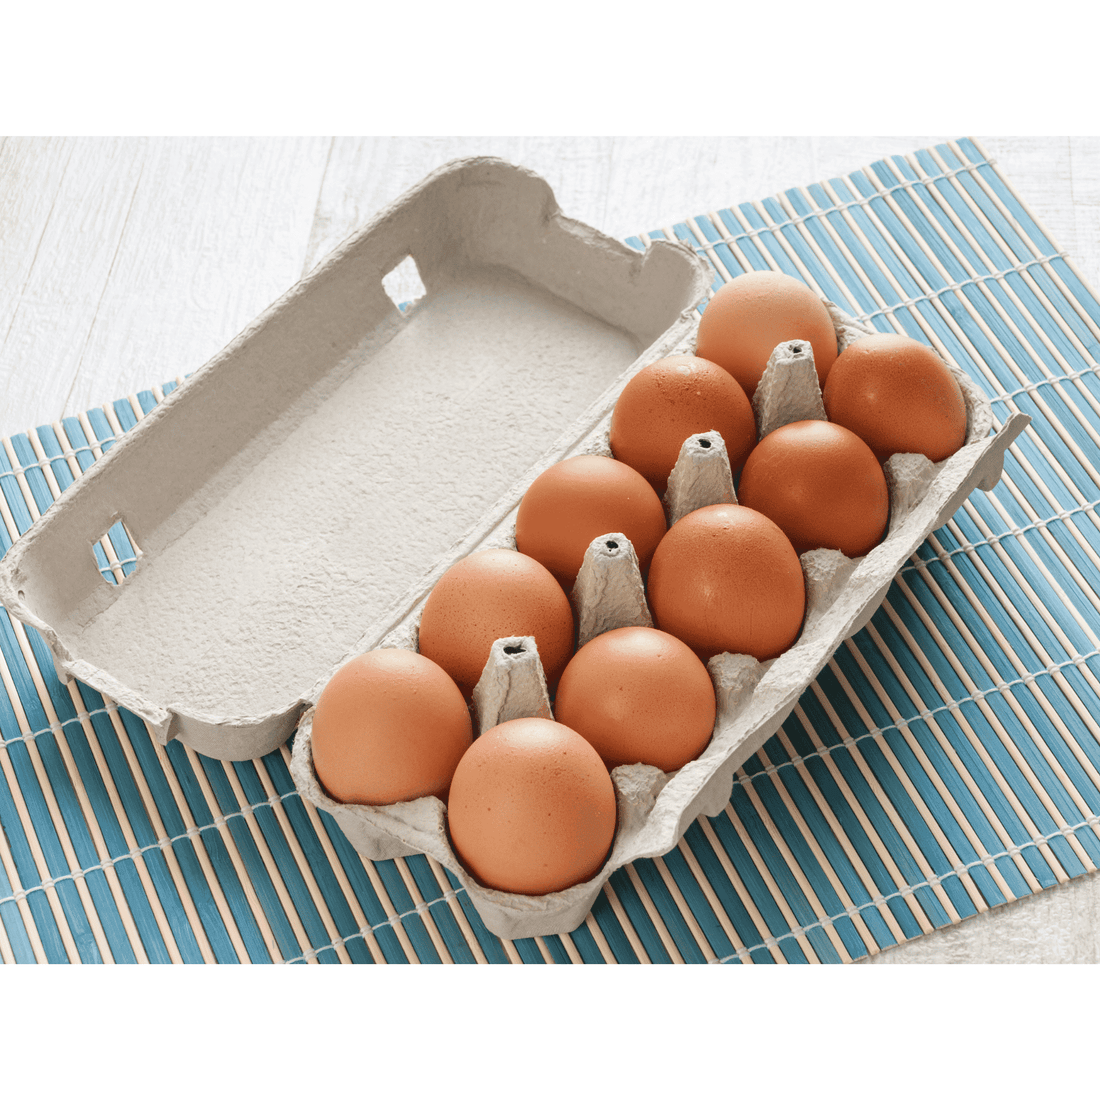 Farm Fresh Chicken Eggs - 1 Dozen - White's Family Farmhouse 